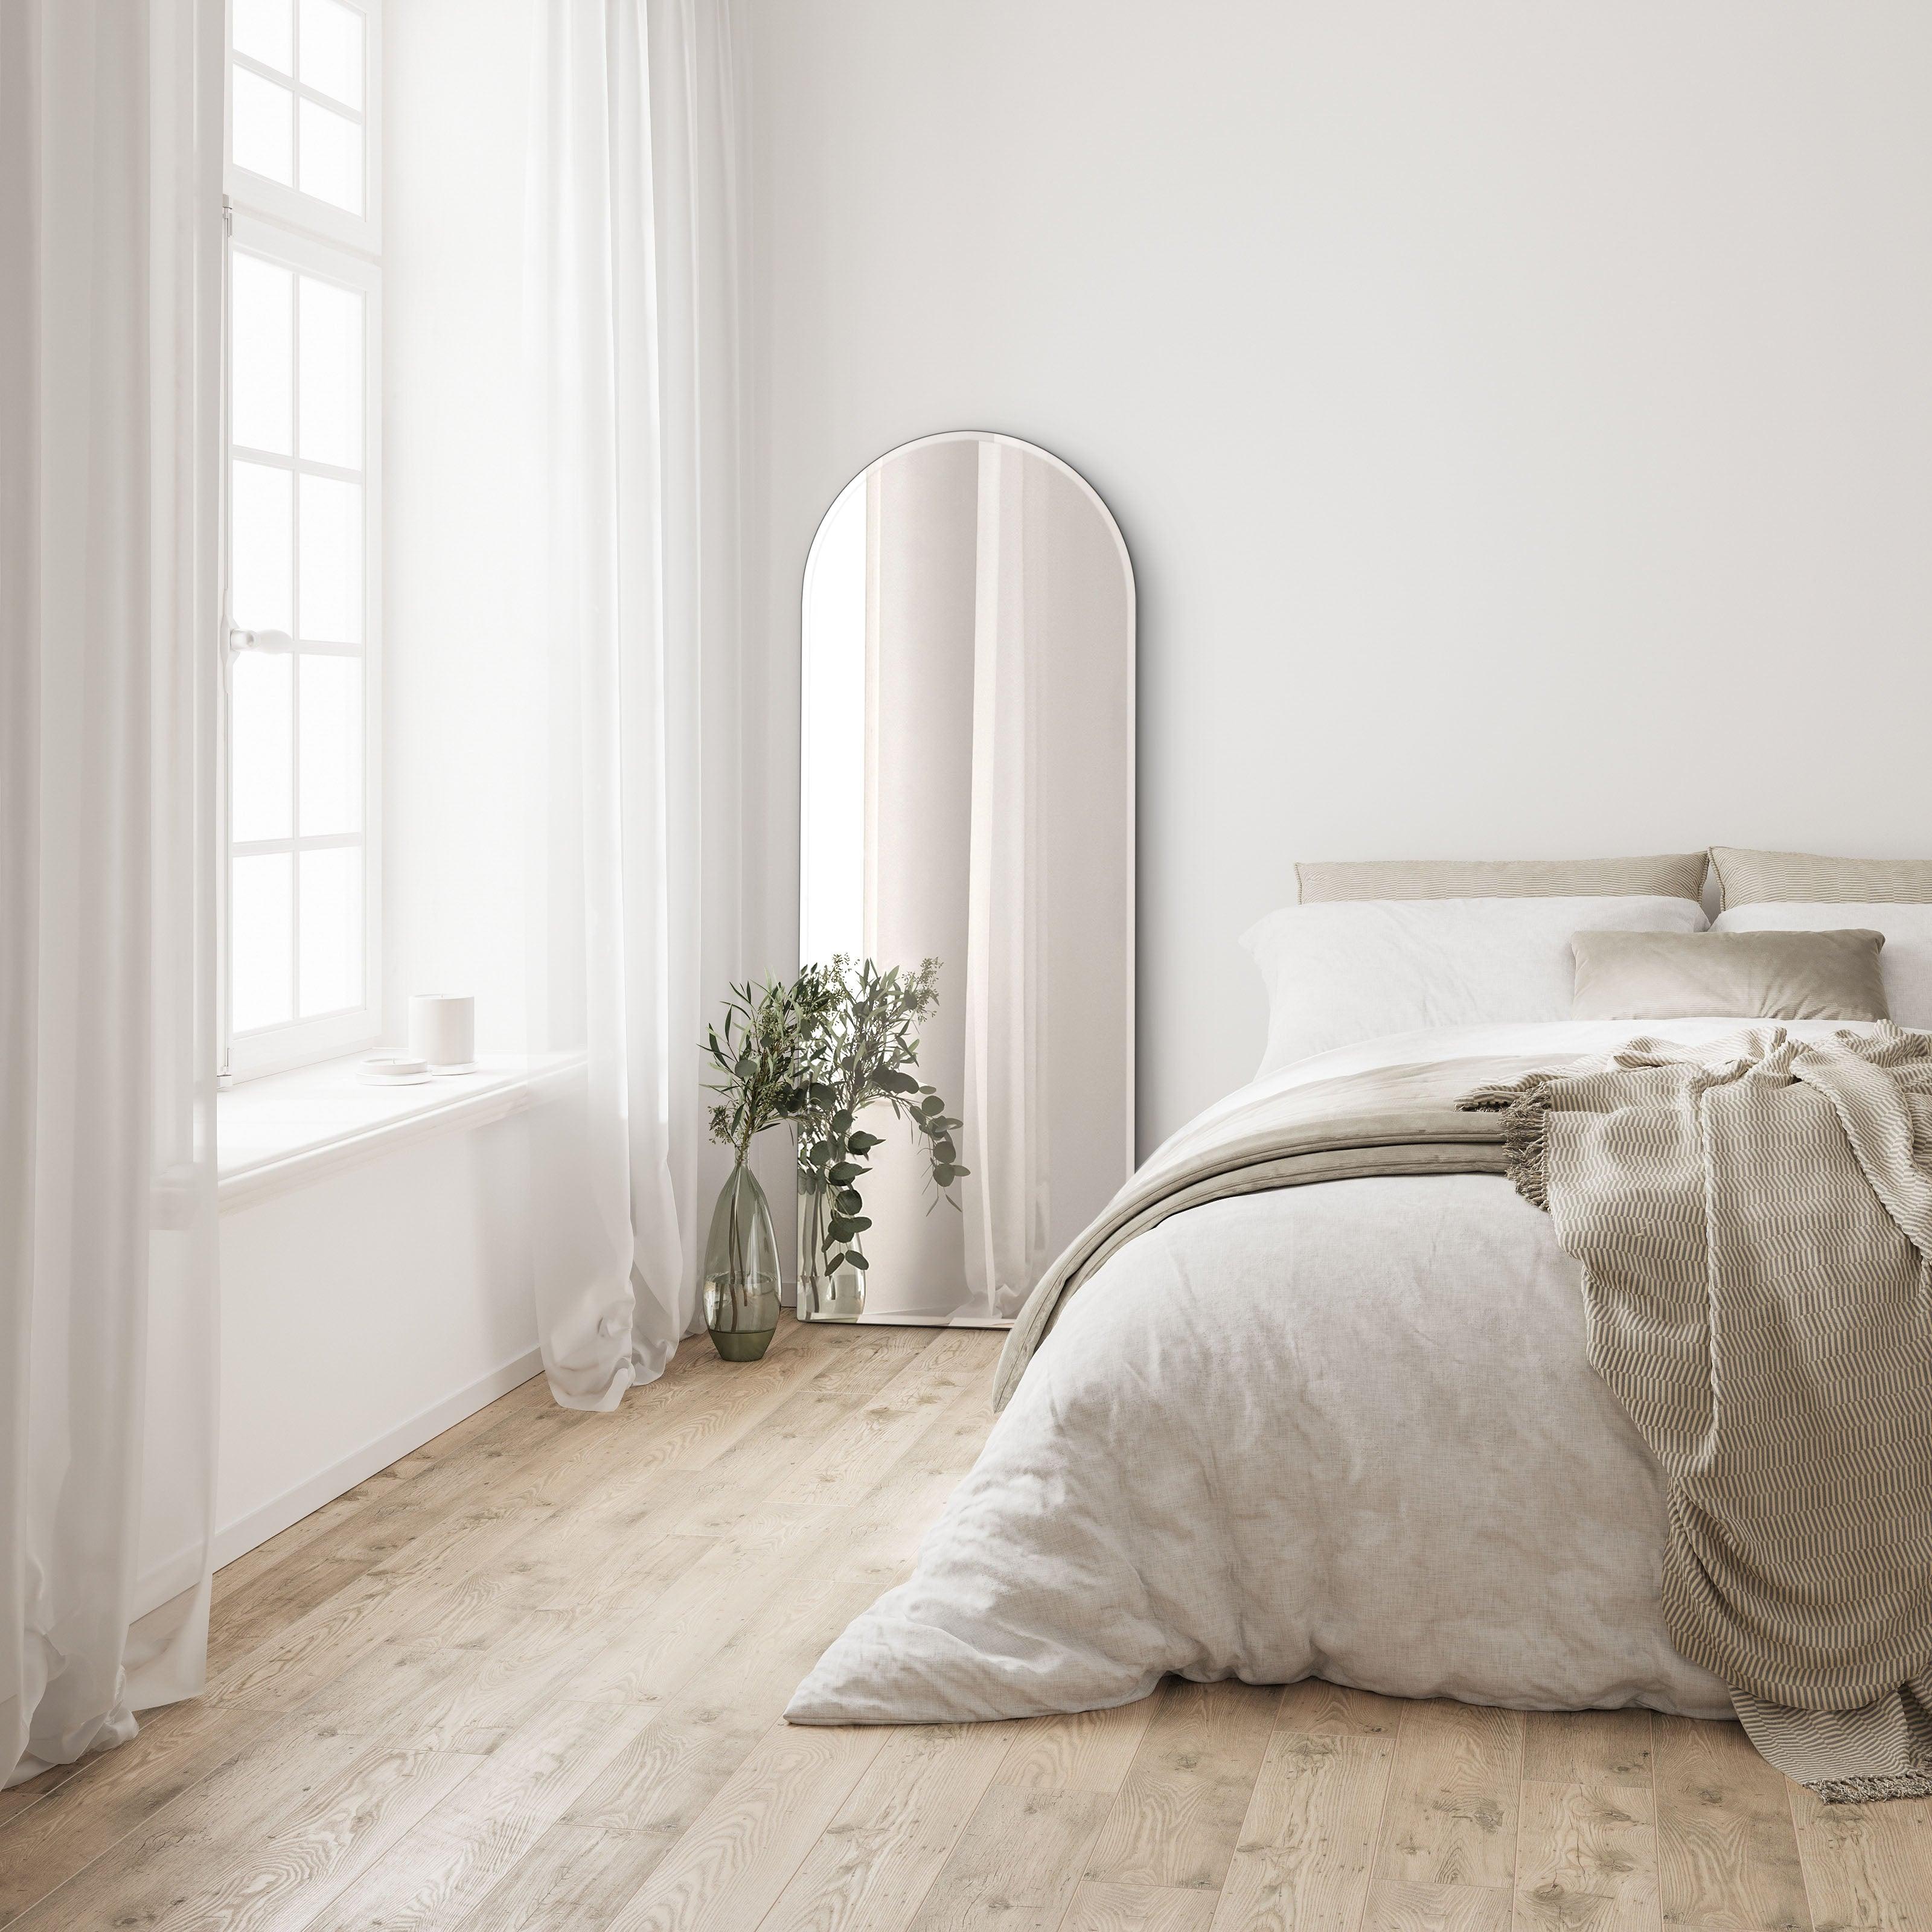 Arko mirror no. 3 fremstår smukt i soveværelset | XL - Blossholm